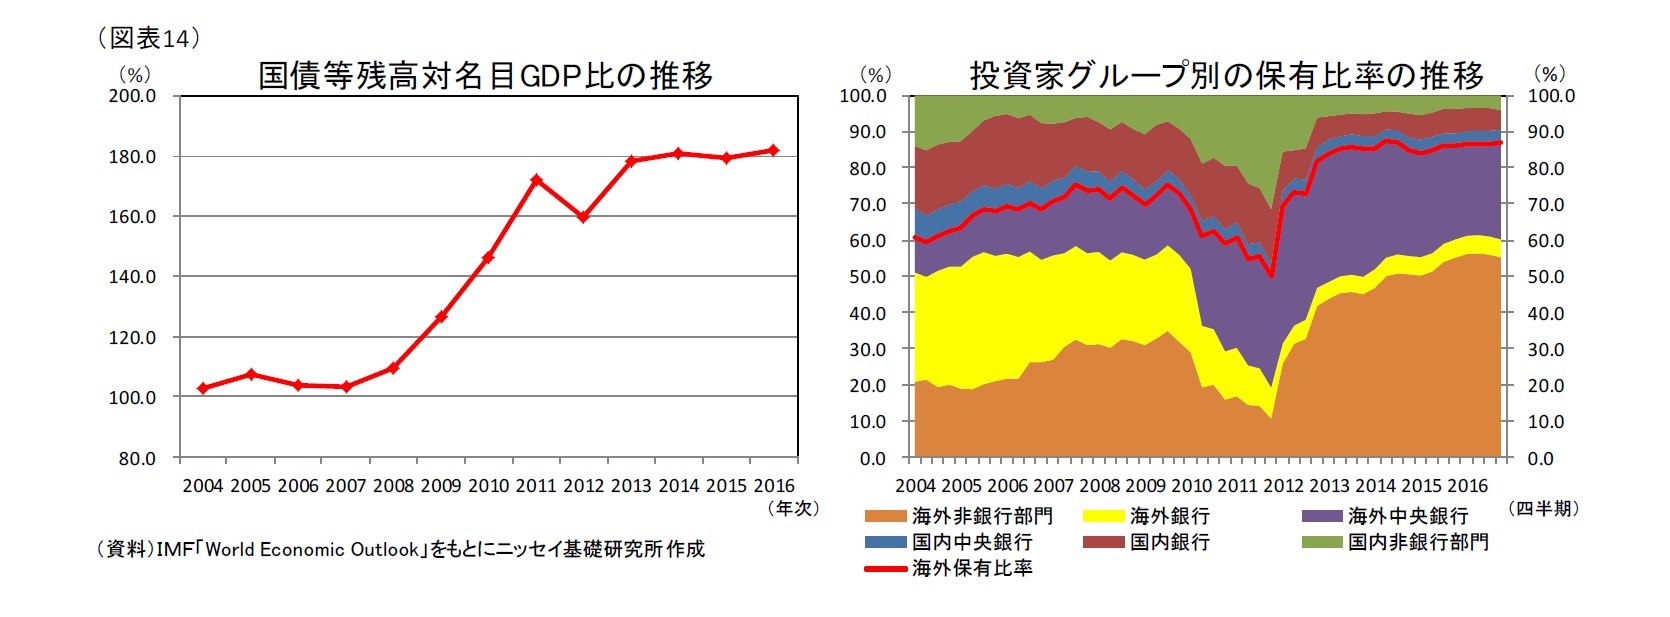 (図表14)国債等残高対名目GDP比の推移/投資家グループ別の保有比率の推移